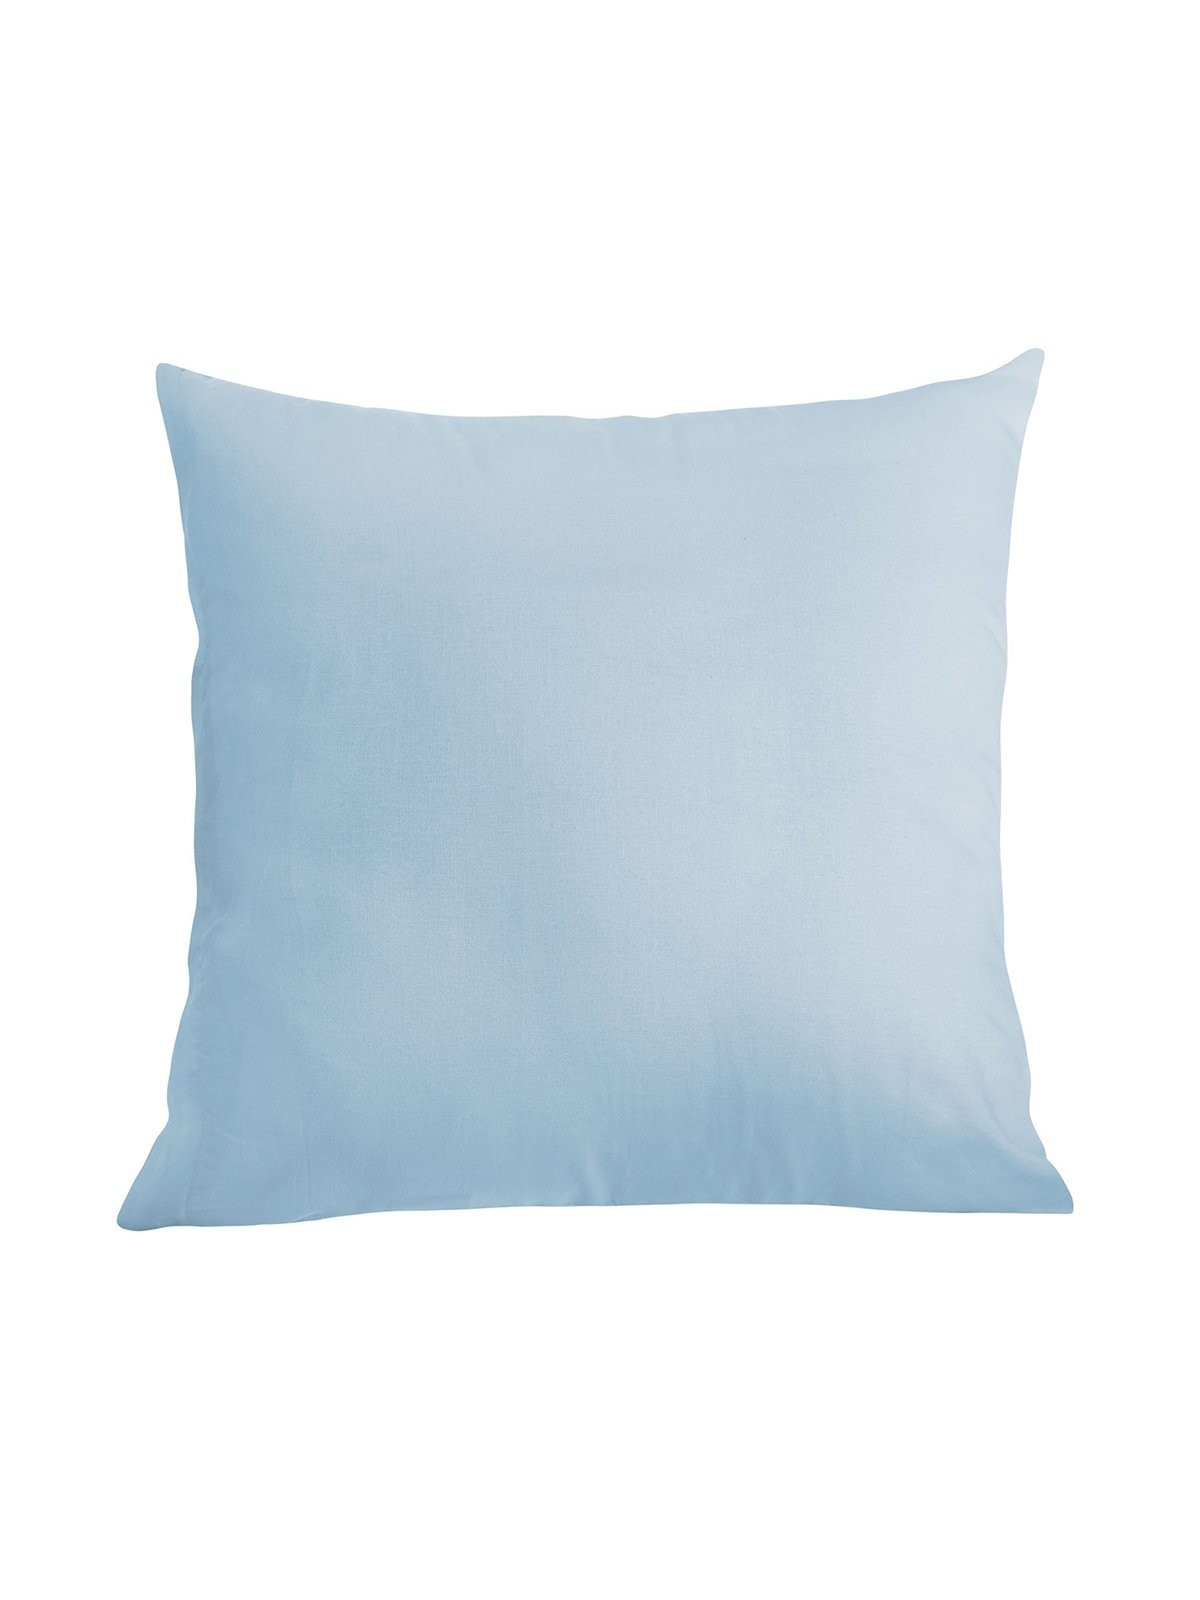 Edoti Cotton pillowcase Simply